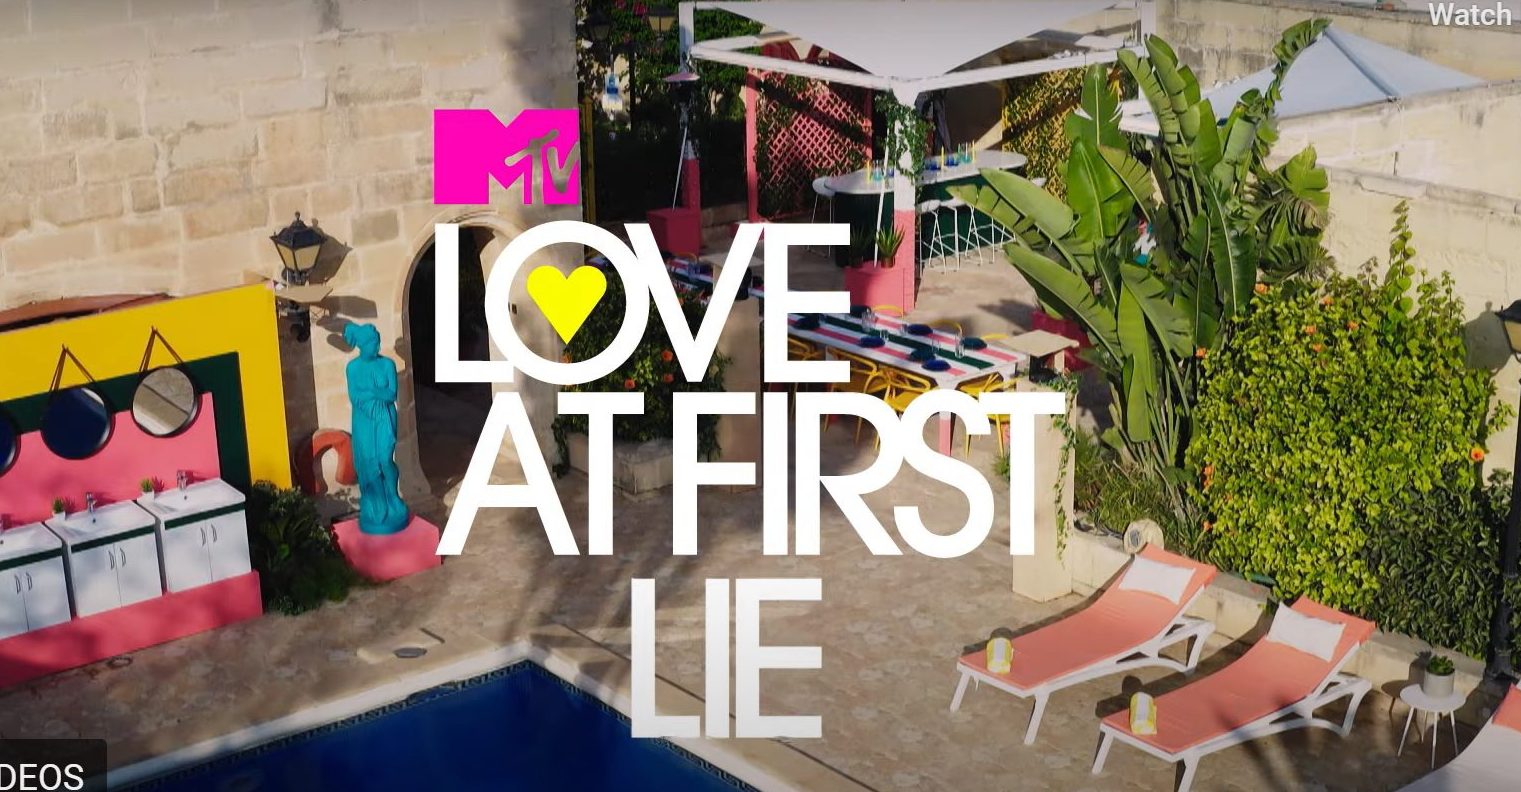 Love At First Lie trailer